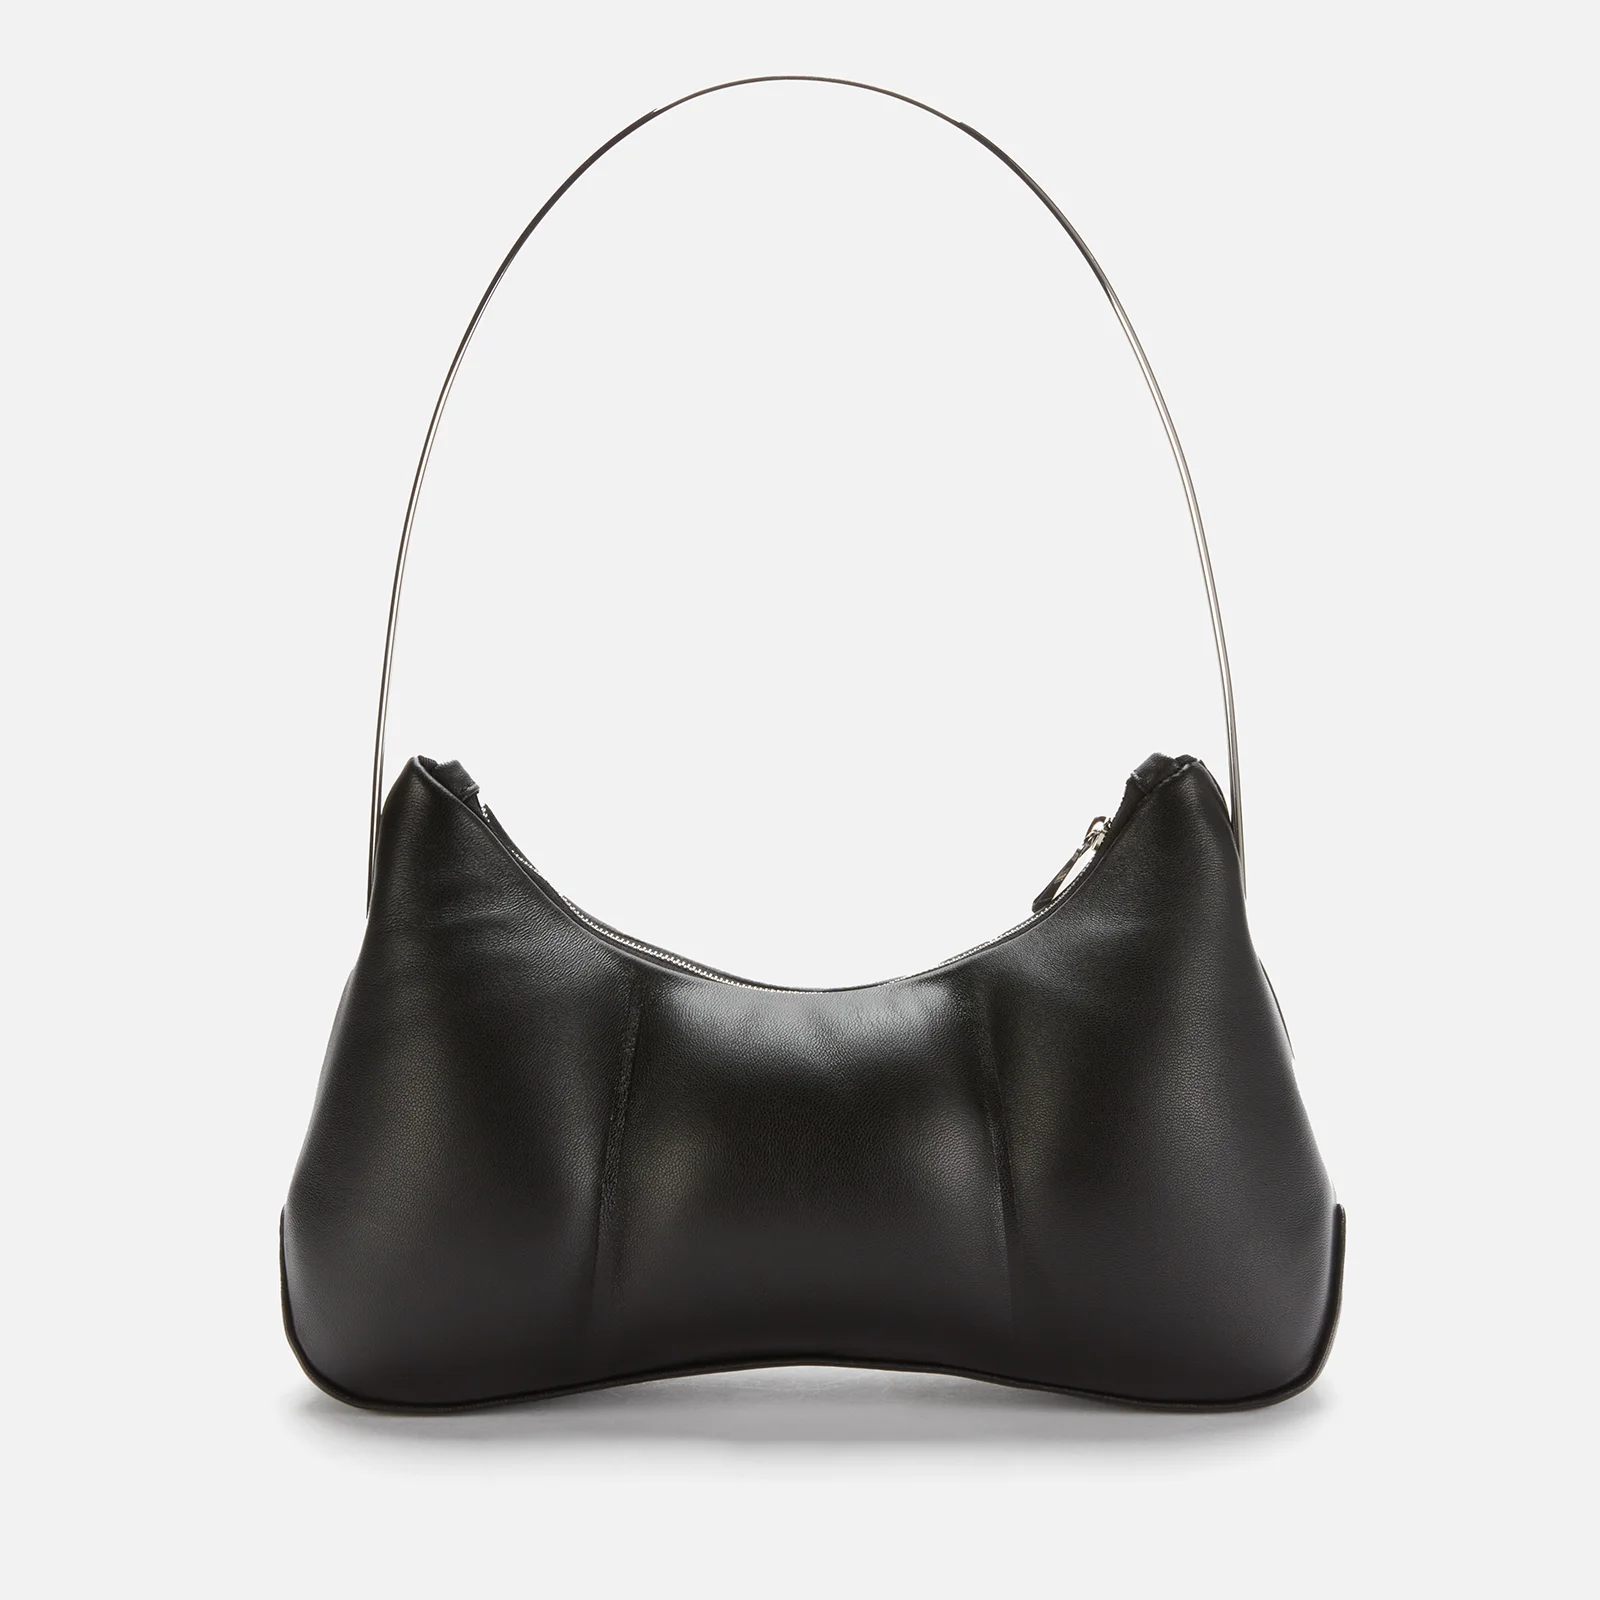 Danse Lente Women's Misty Boost Leather Shoulder Bag - Black Image 1